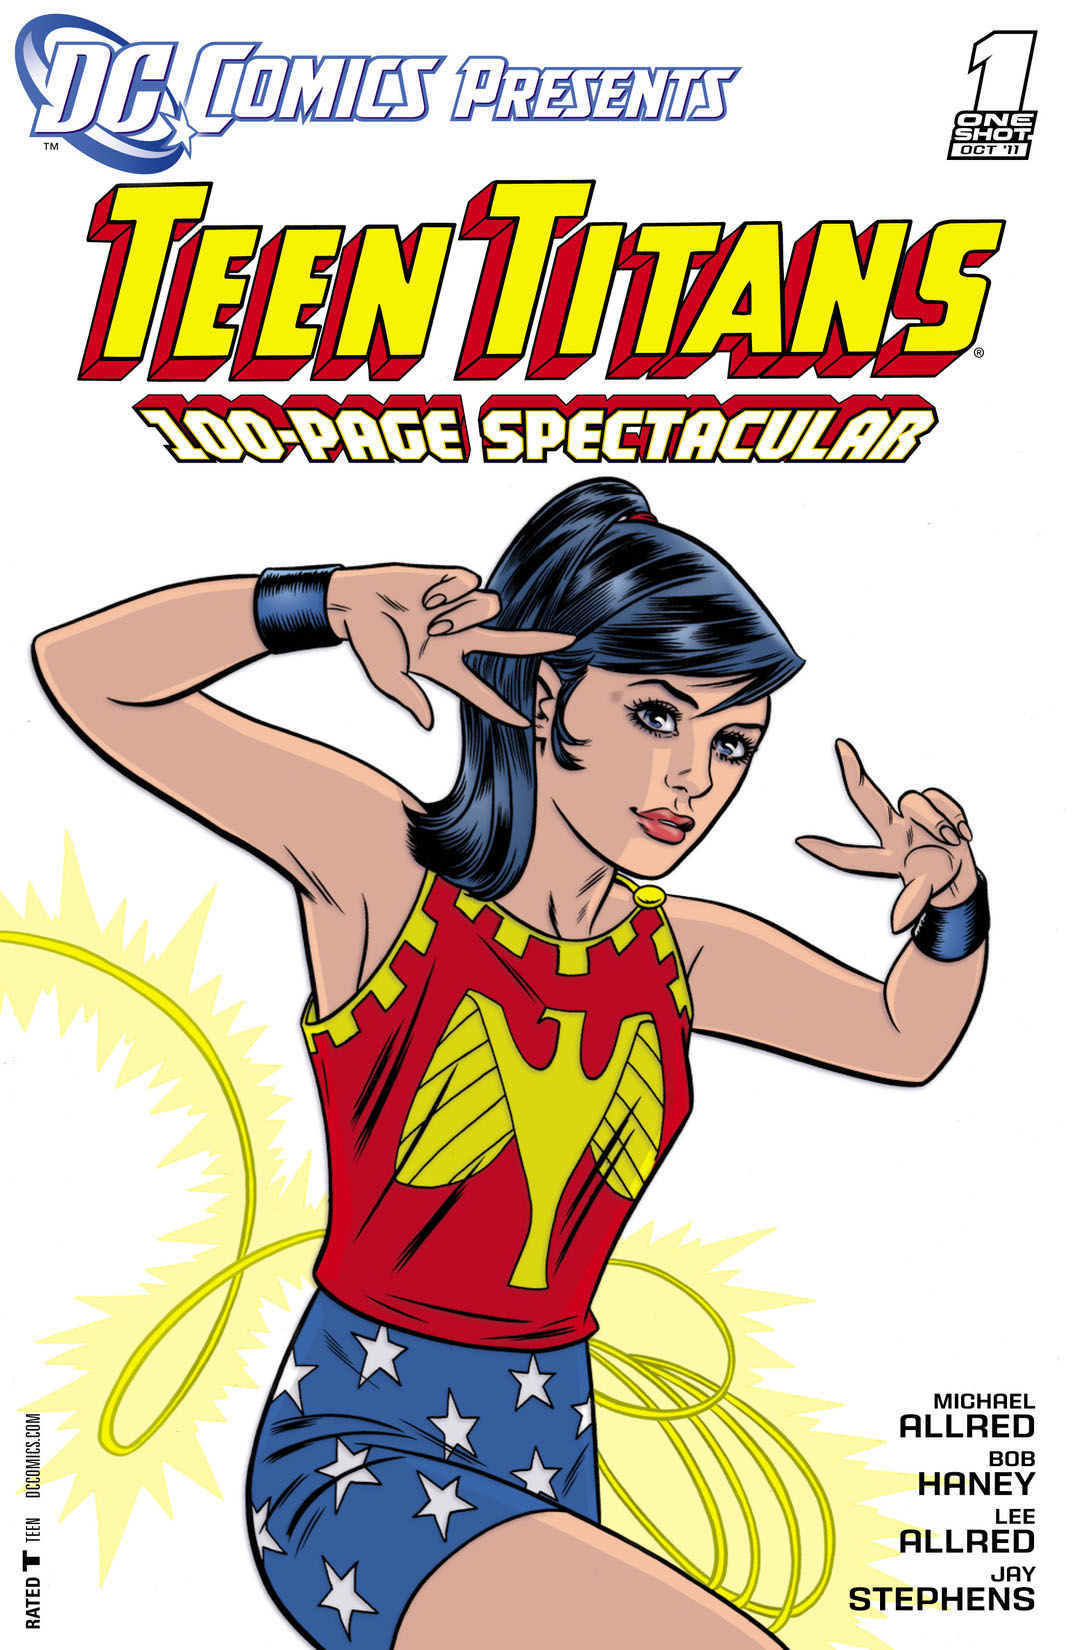 DC Comics Presents: Teen Titans (2011-) #1 preview images